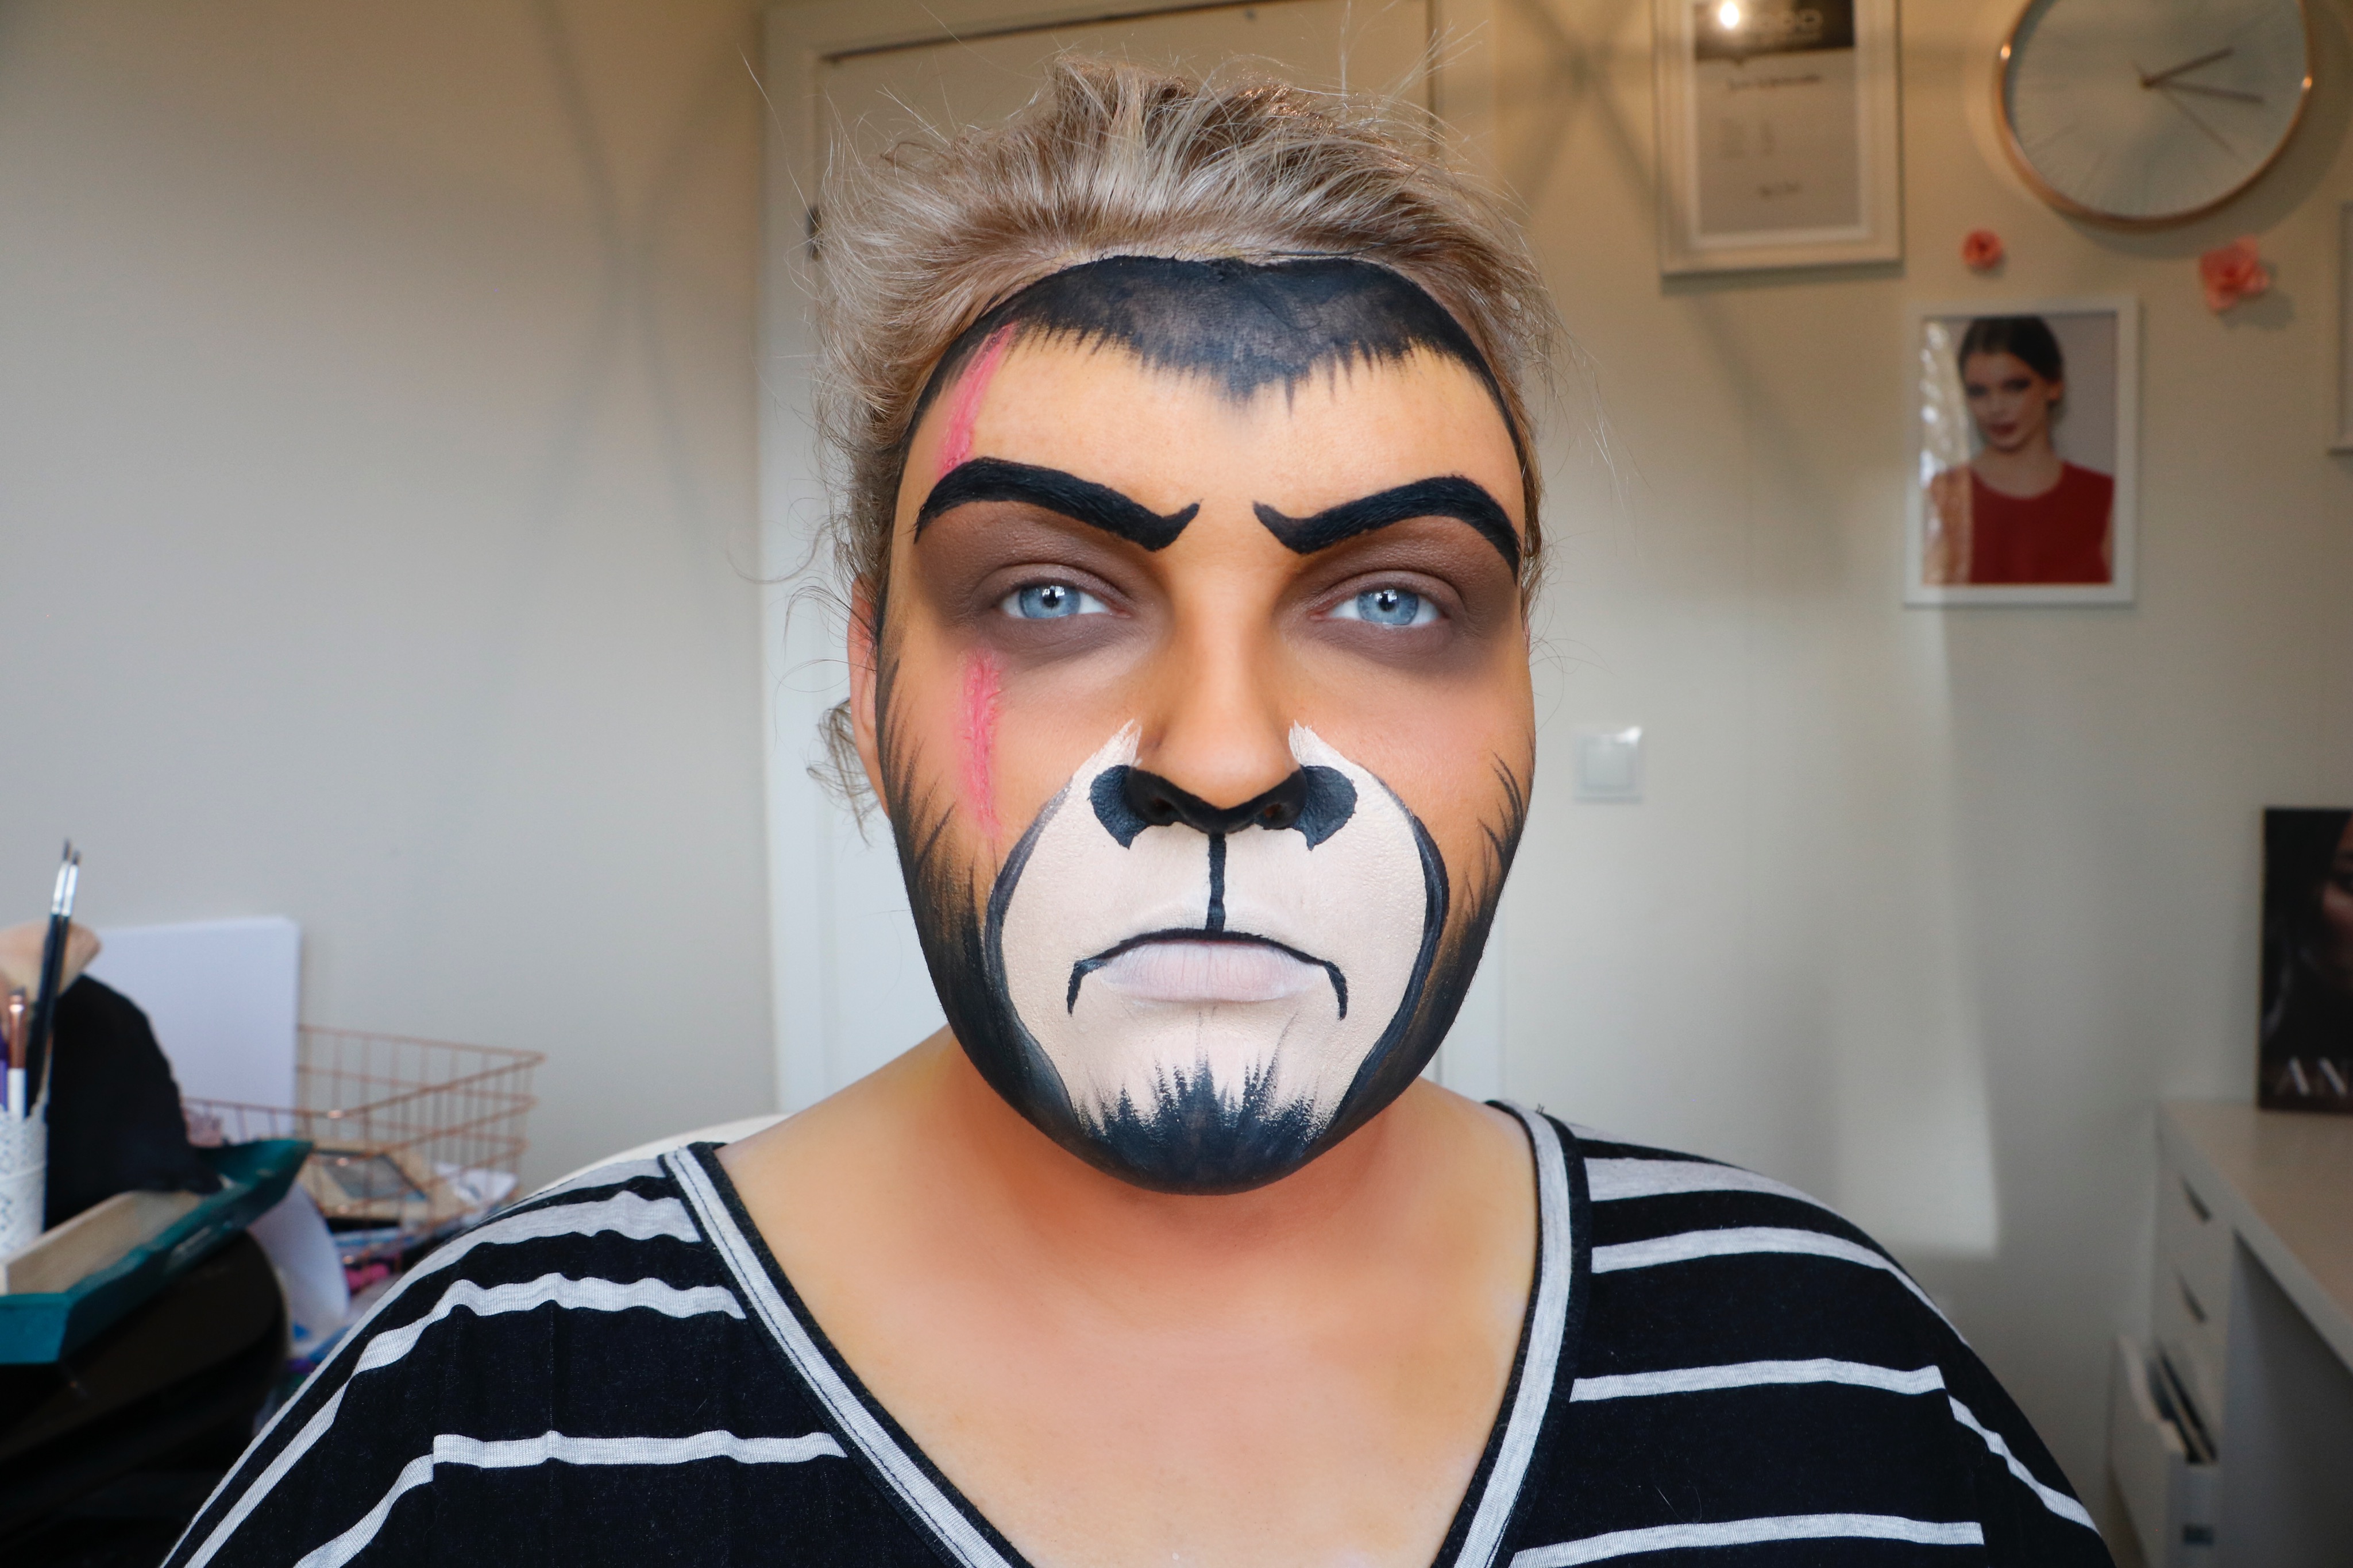 lion face paint